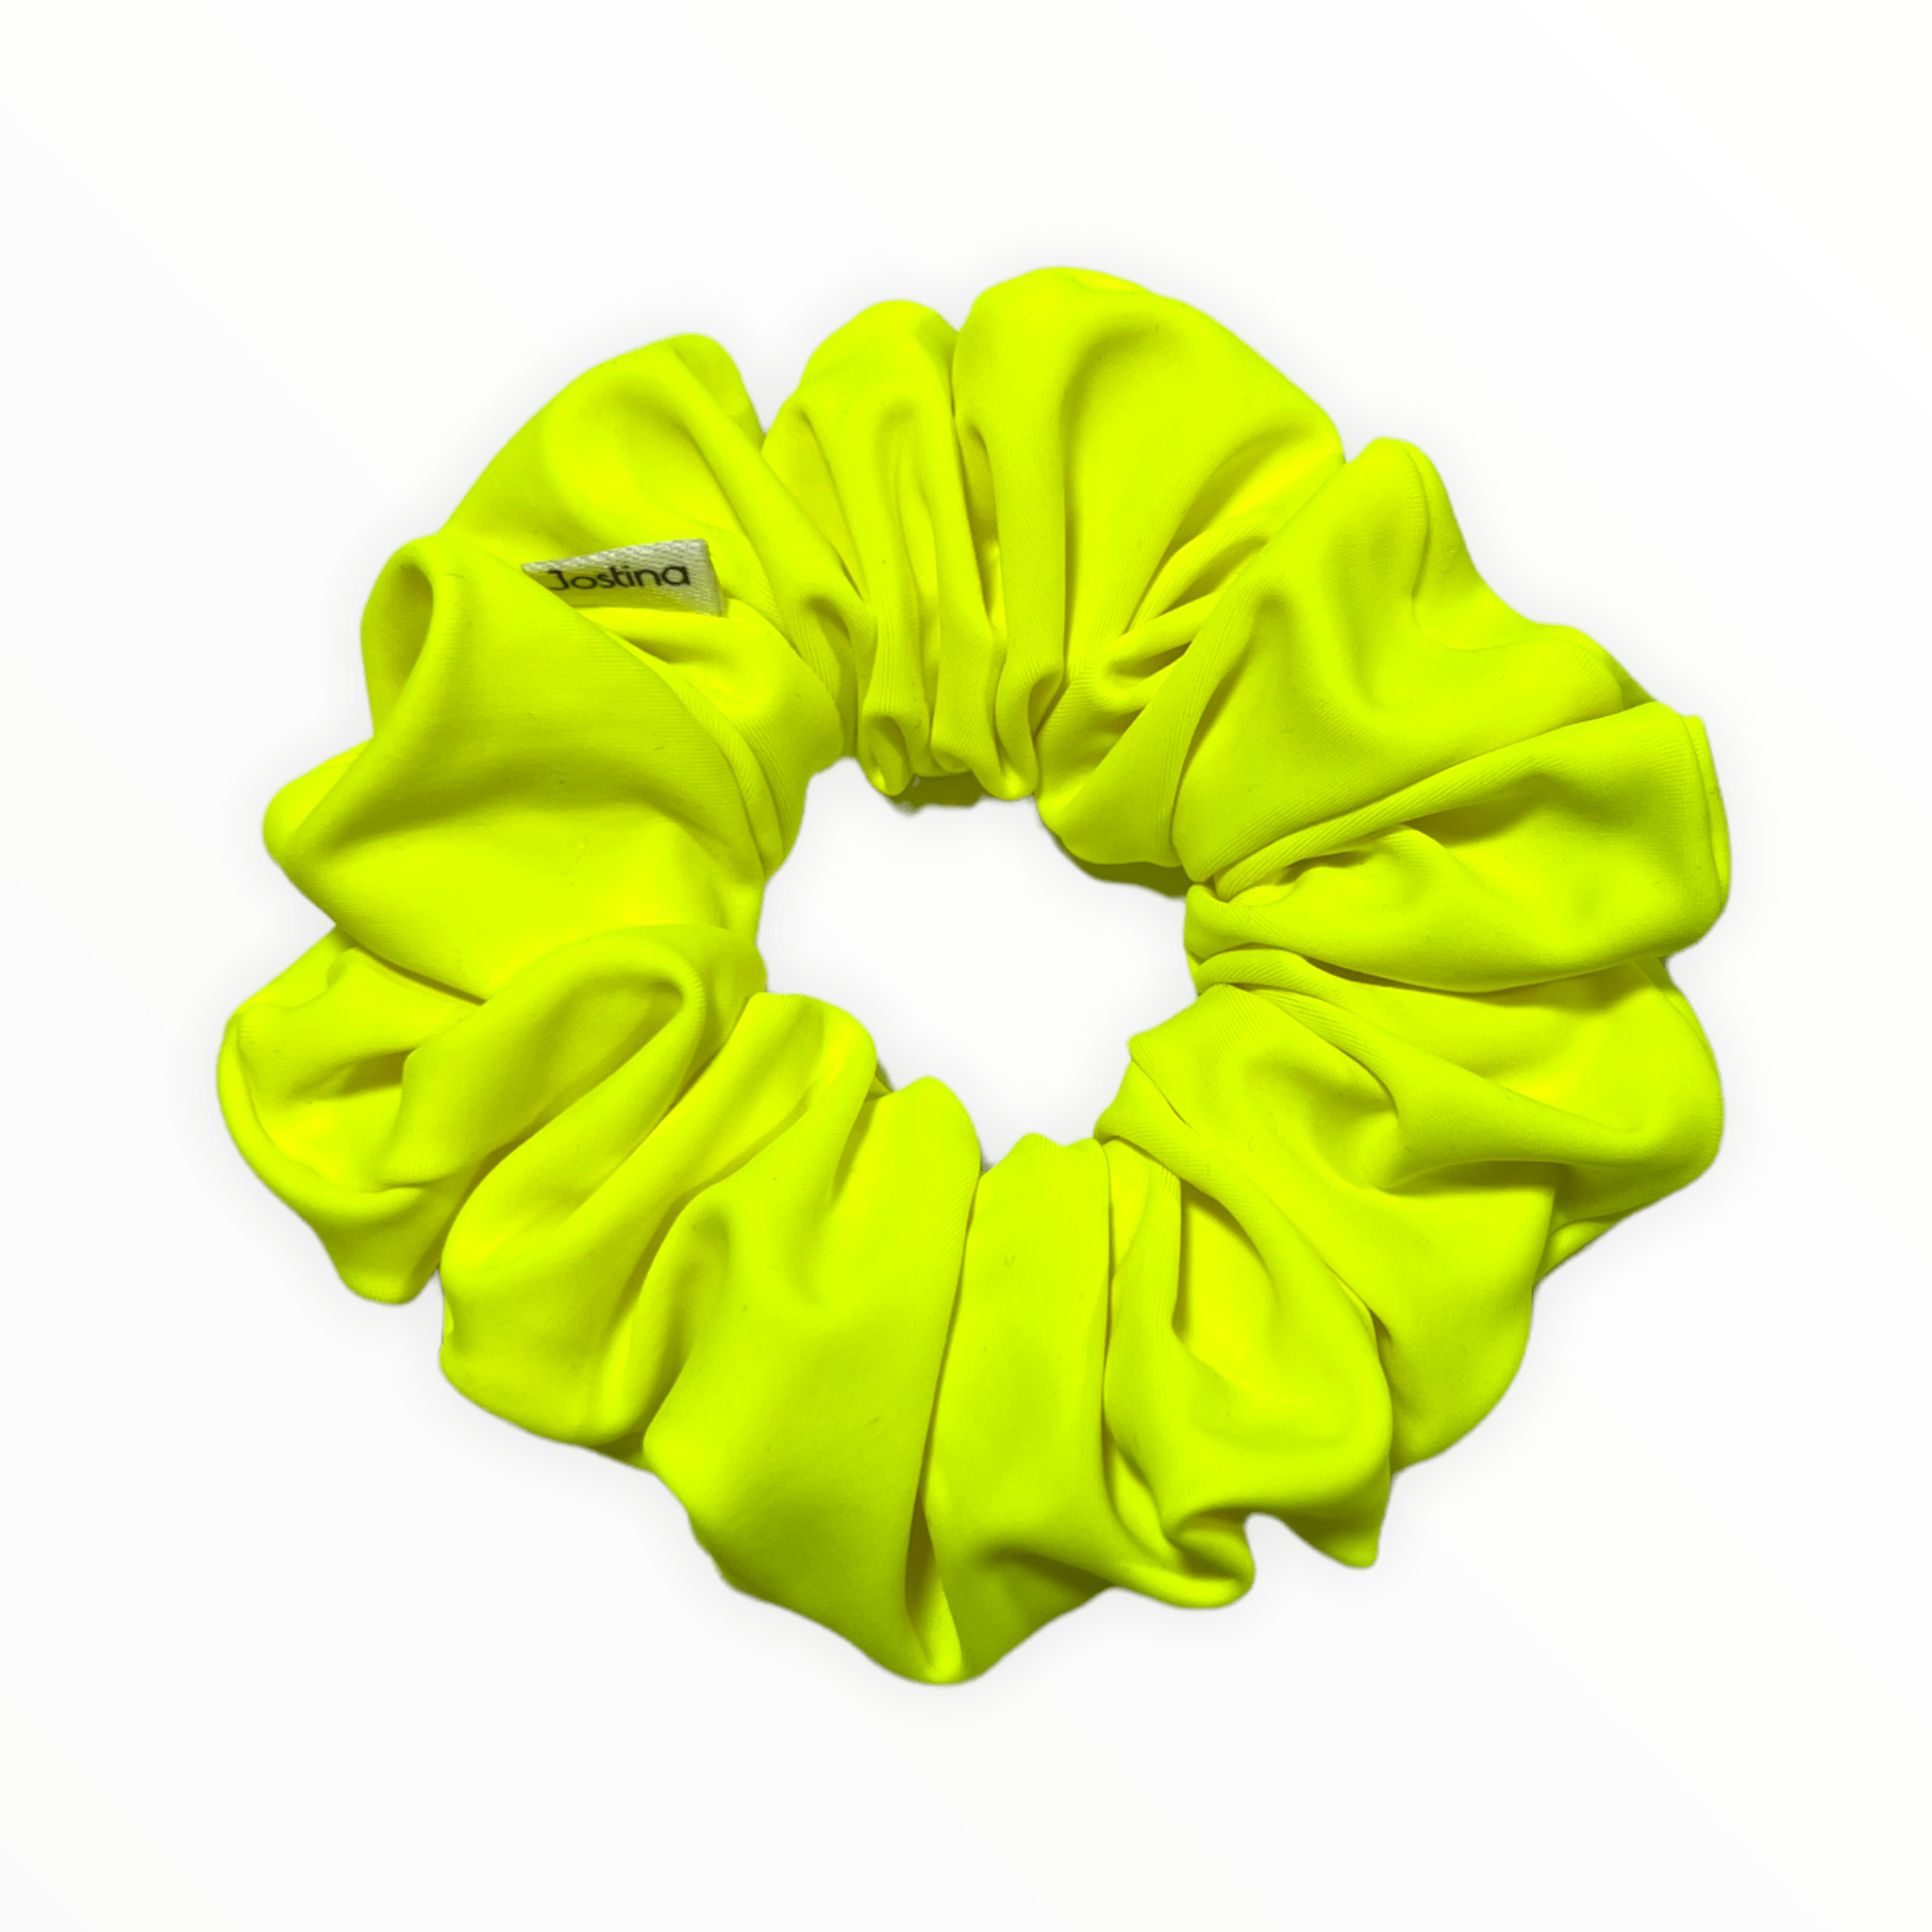 Swim: Neon Yellow - Jostina